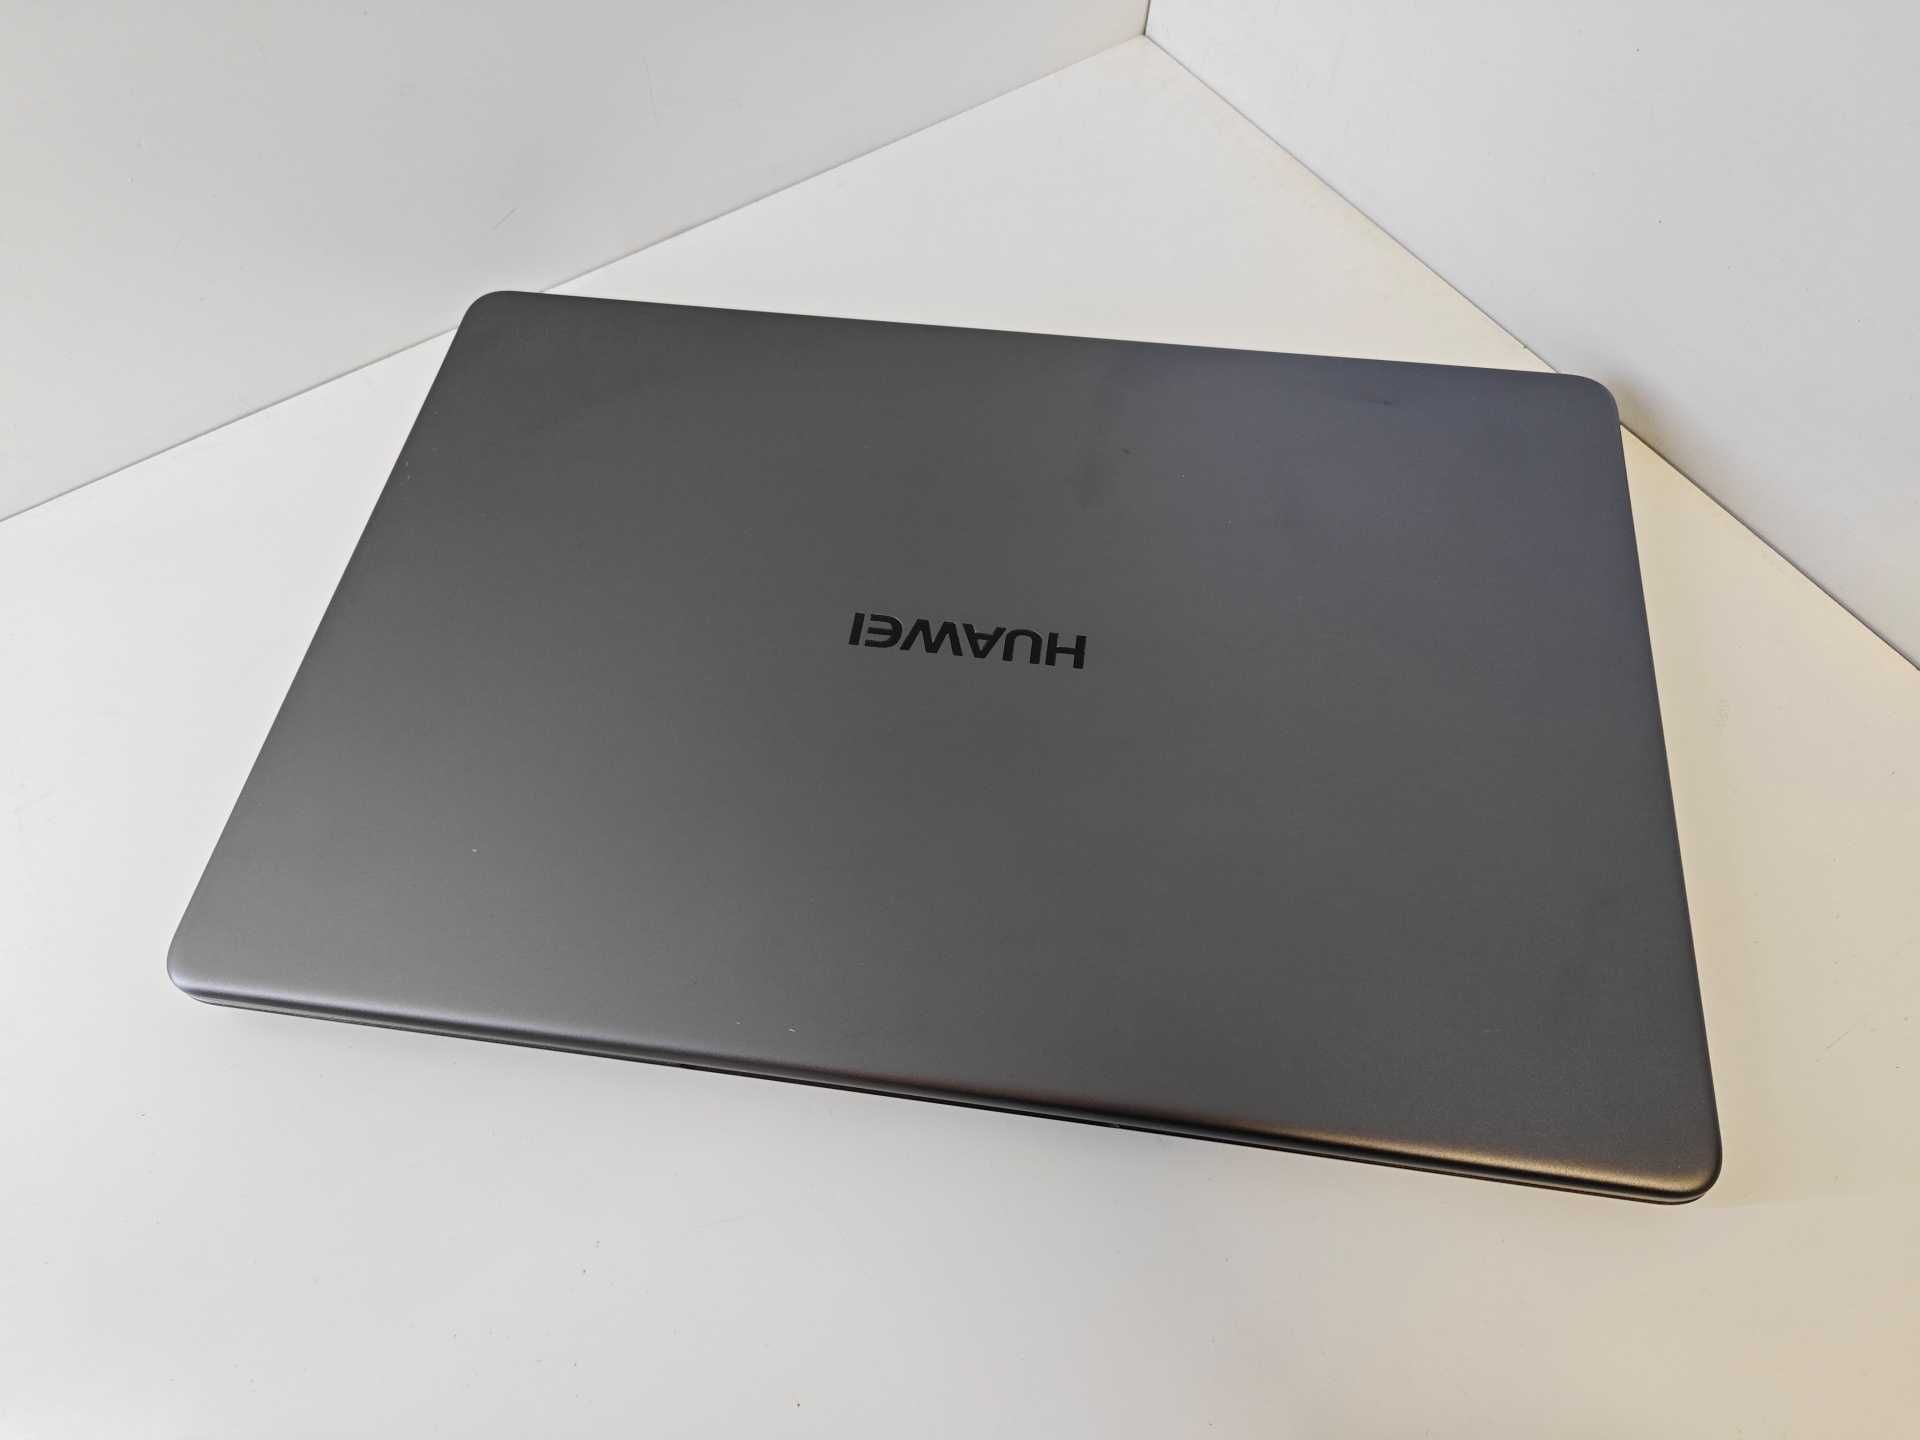 Laptop Huawei Matebook D I5 8250U 8GB 256GB SSD UHD 620 Intel W10